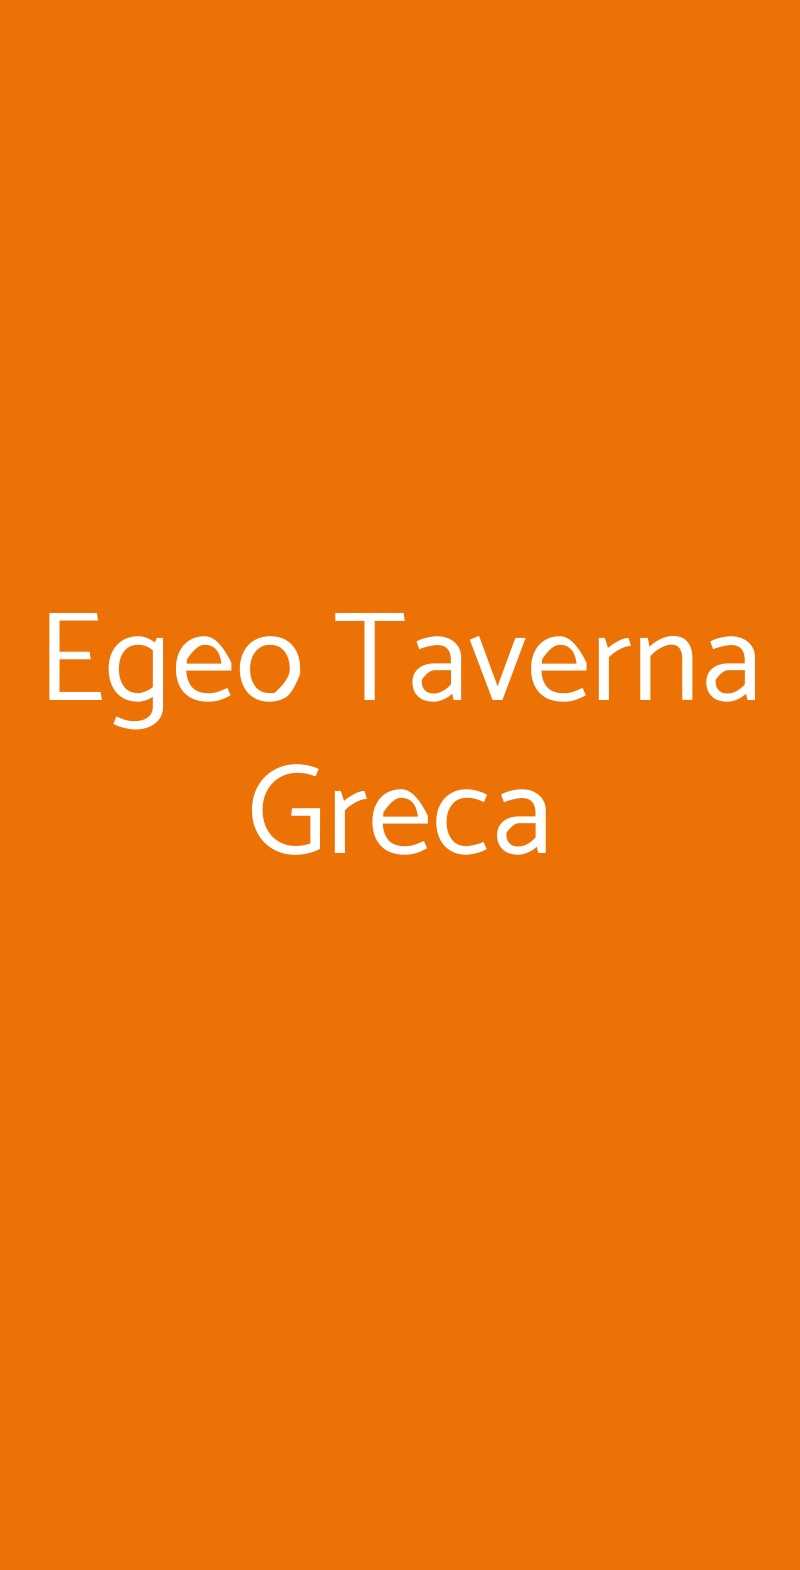 Egeo Taverna Greca Roma menù 1 pagina